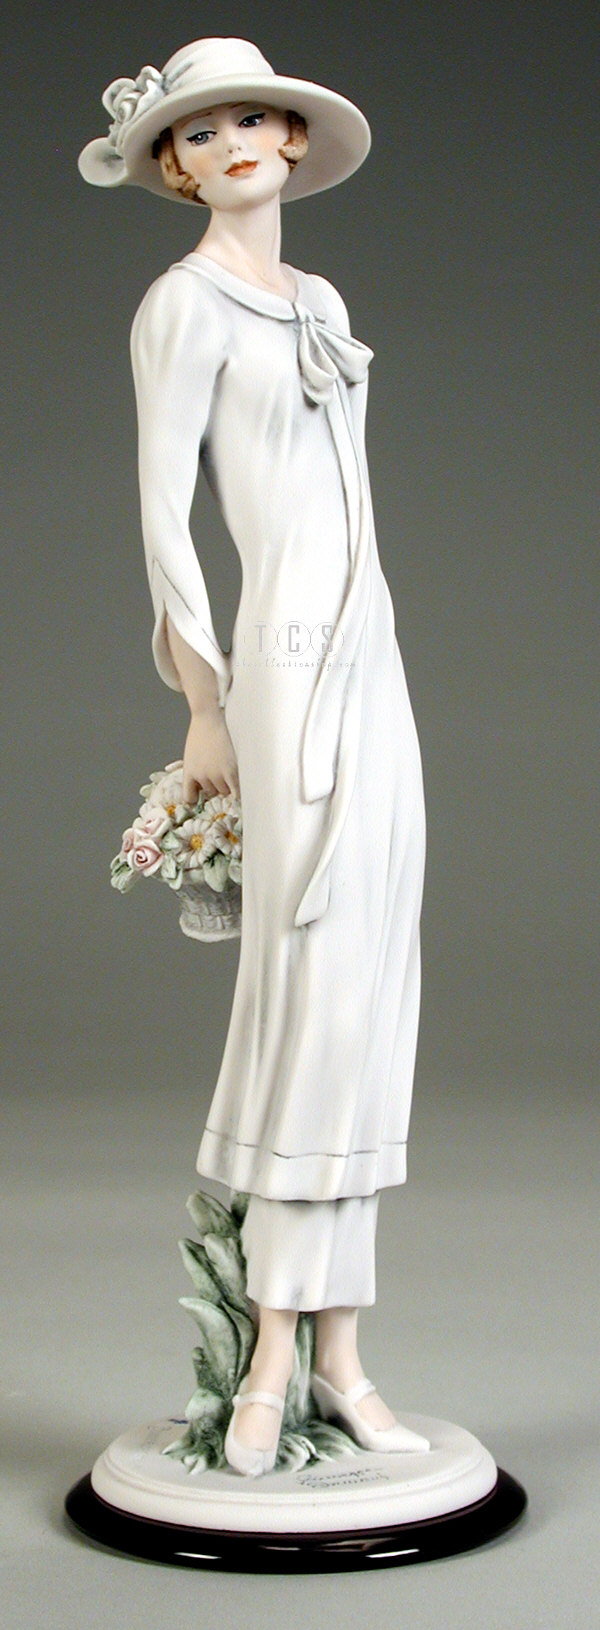 Introducir 45+ imagen giuseppe armani figurines florence sculture d arte